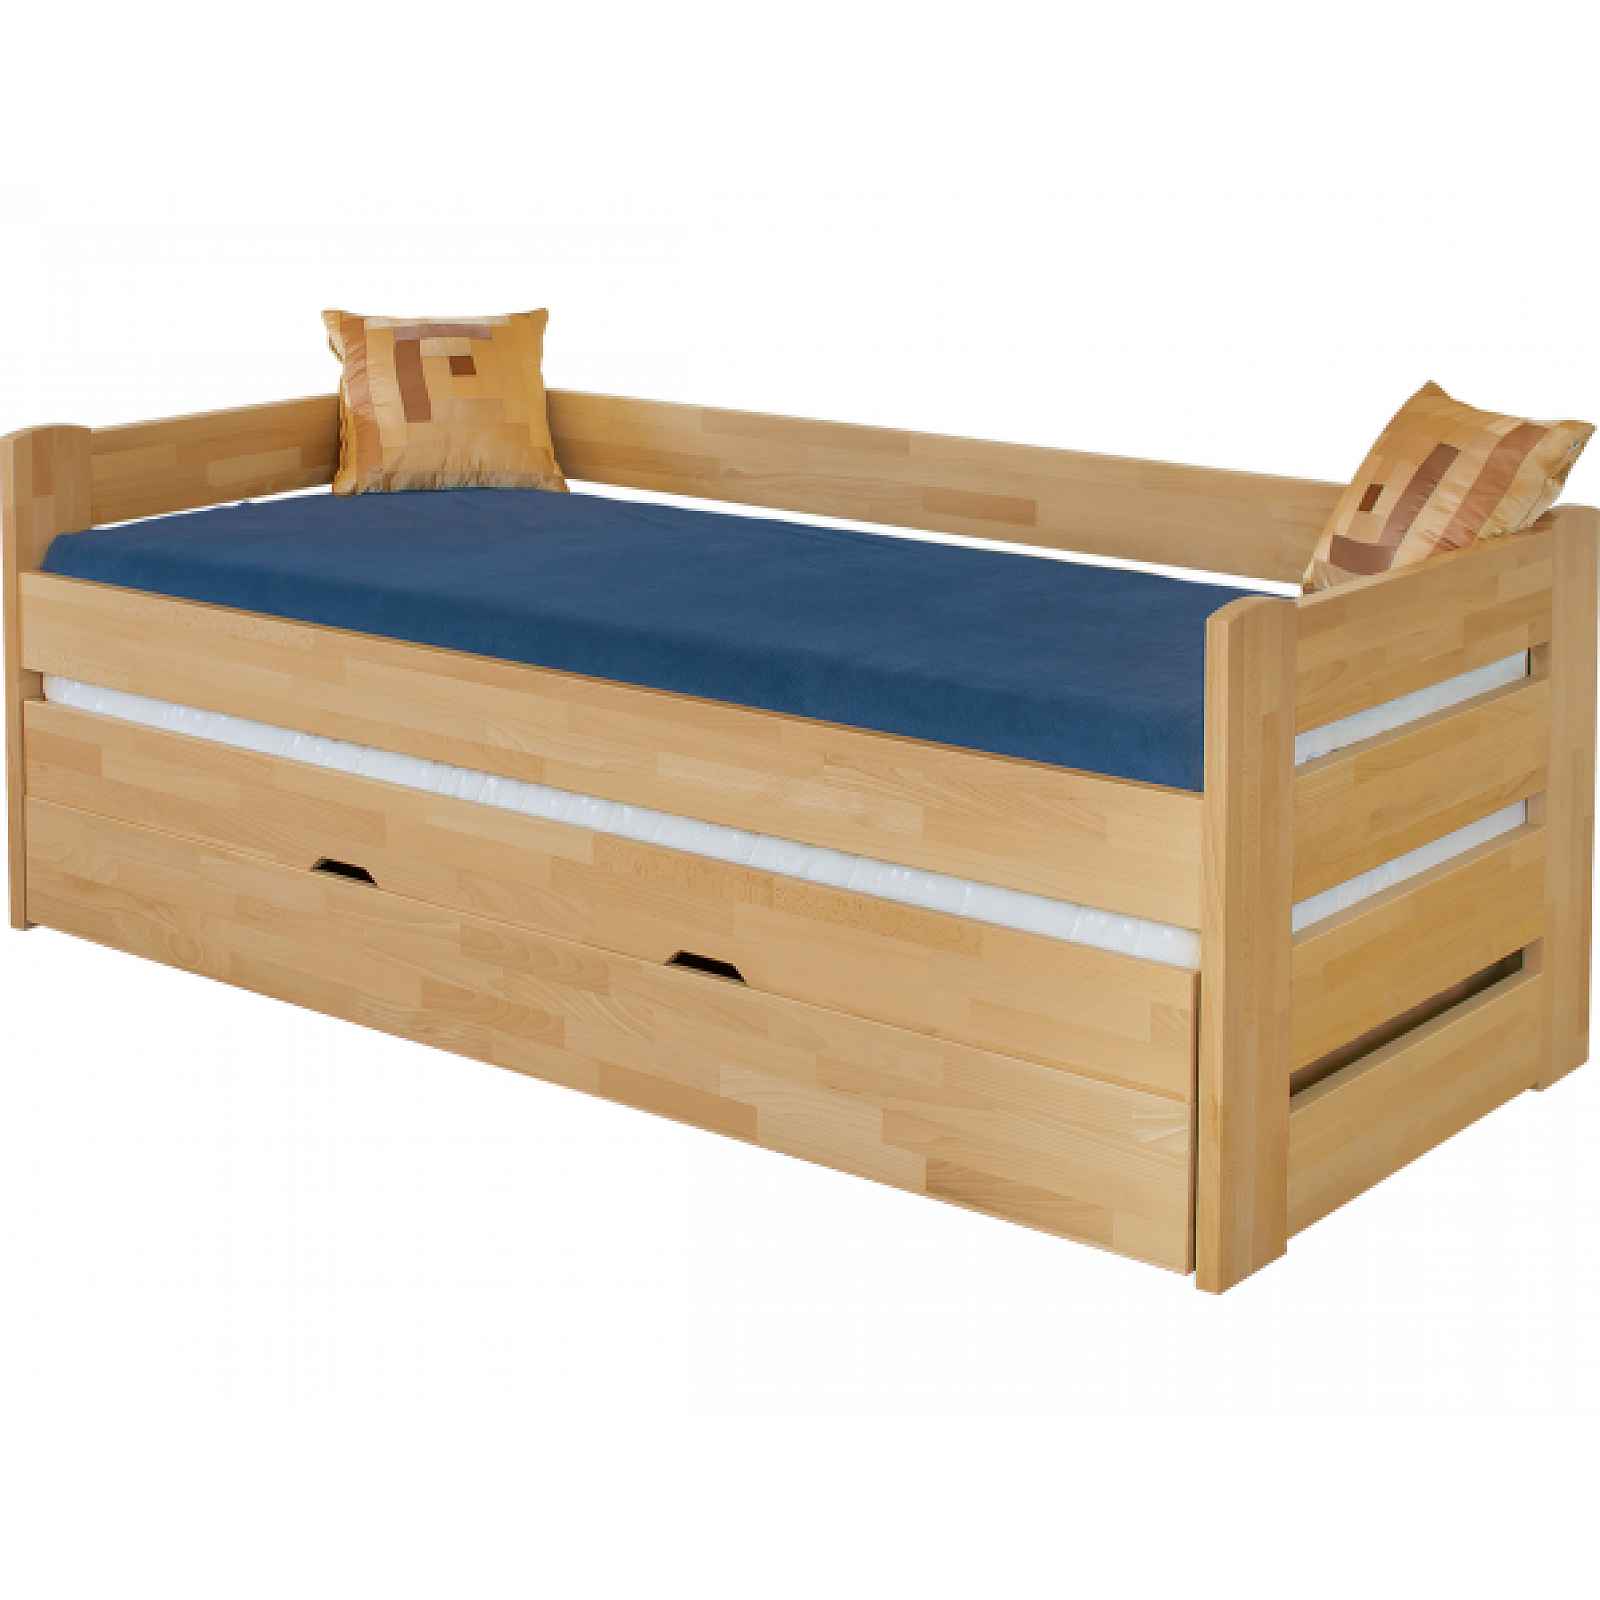 Dětská rozkládací postel Vario, masiv lak, olše